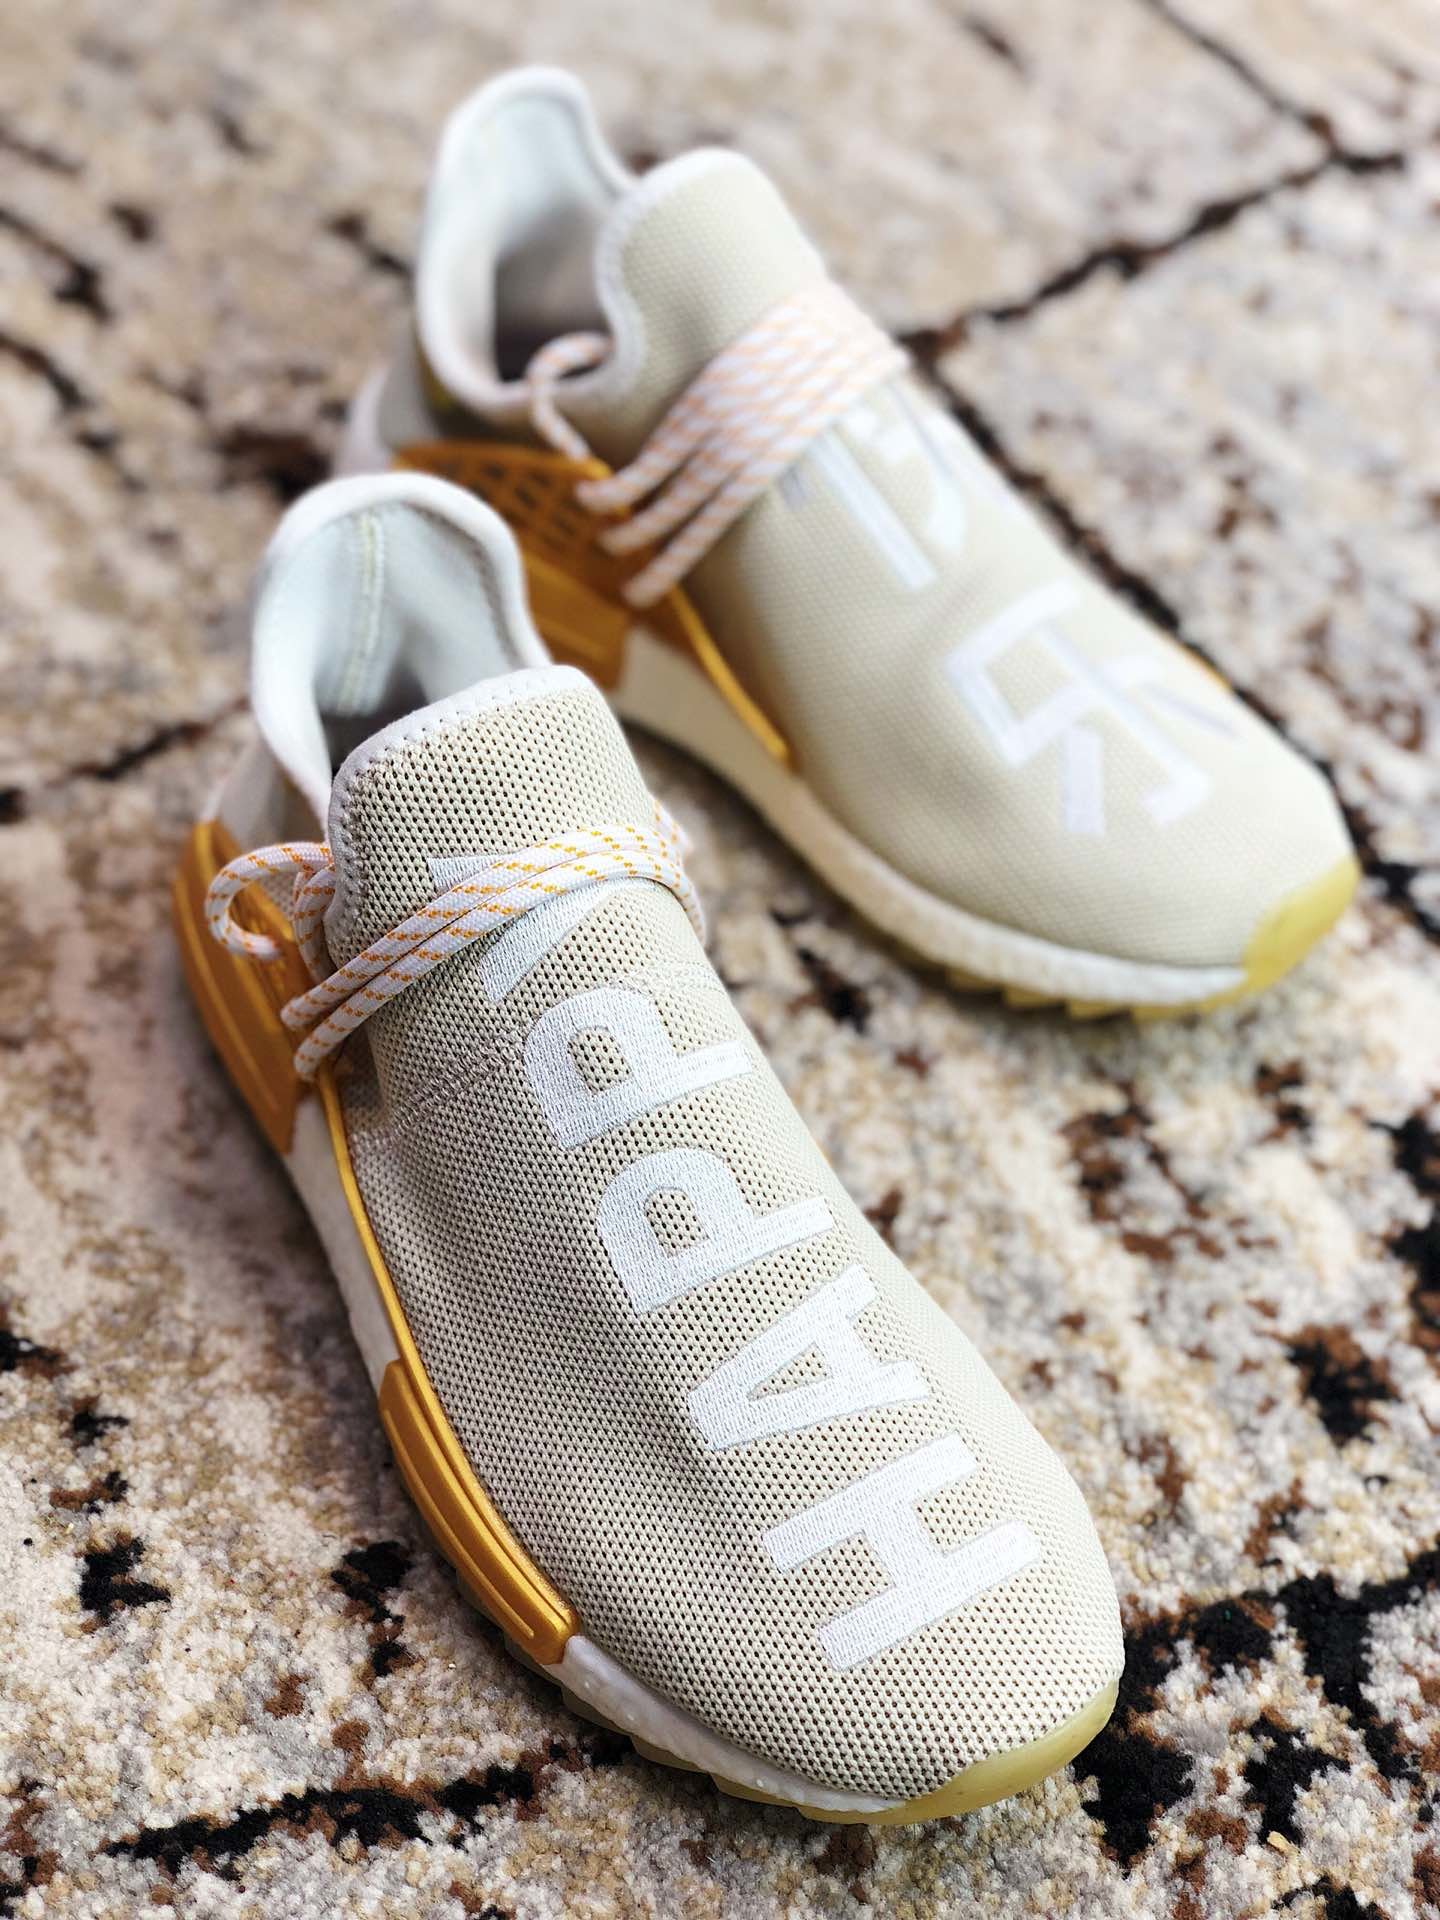 High Quality Pharrell x adidas NMD Hu F&F edition“Happy” gold ready